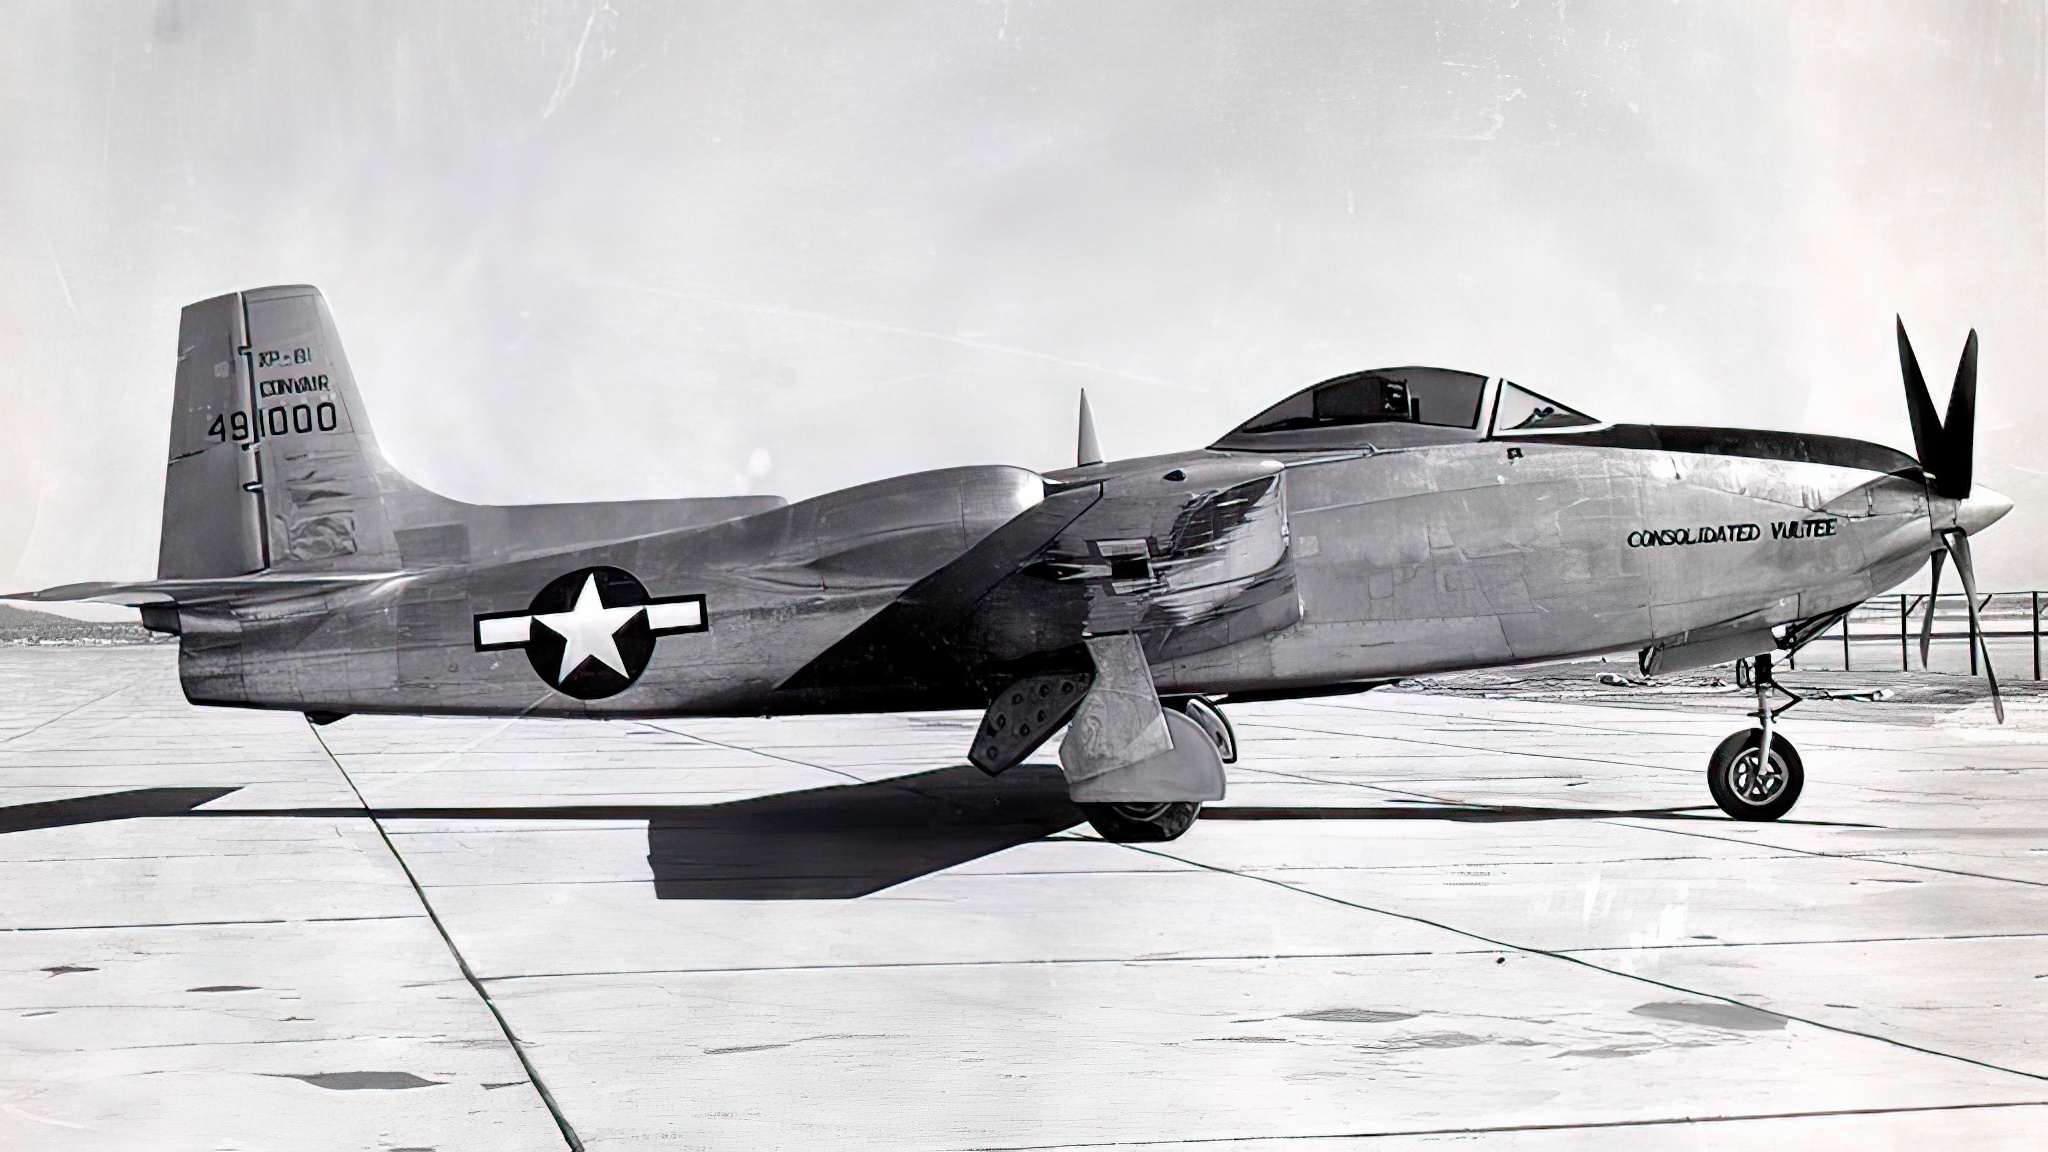 Convair XP-81 usaf